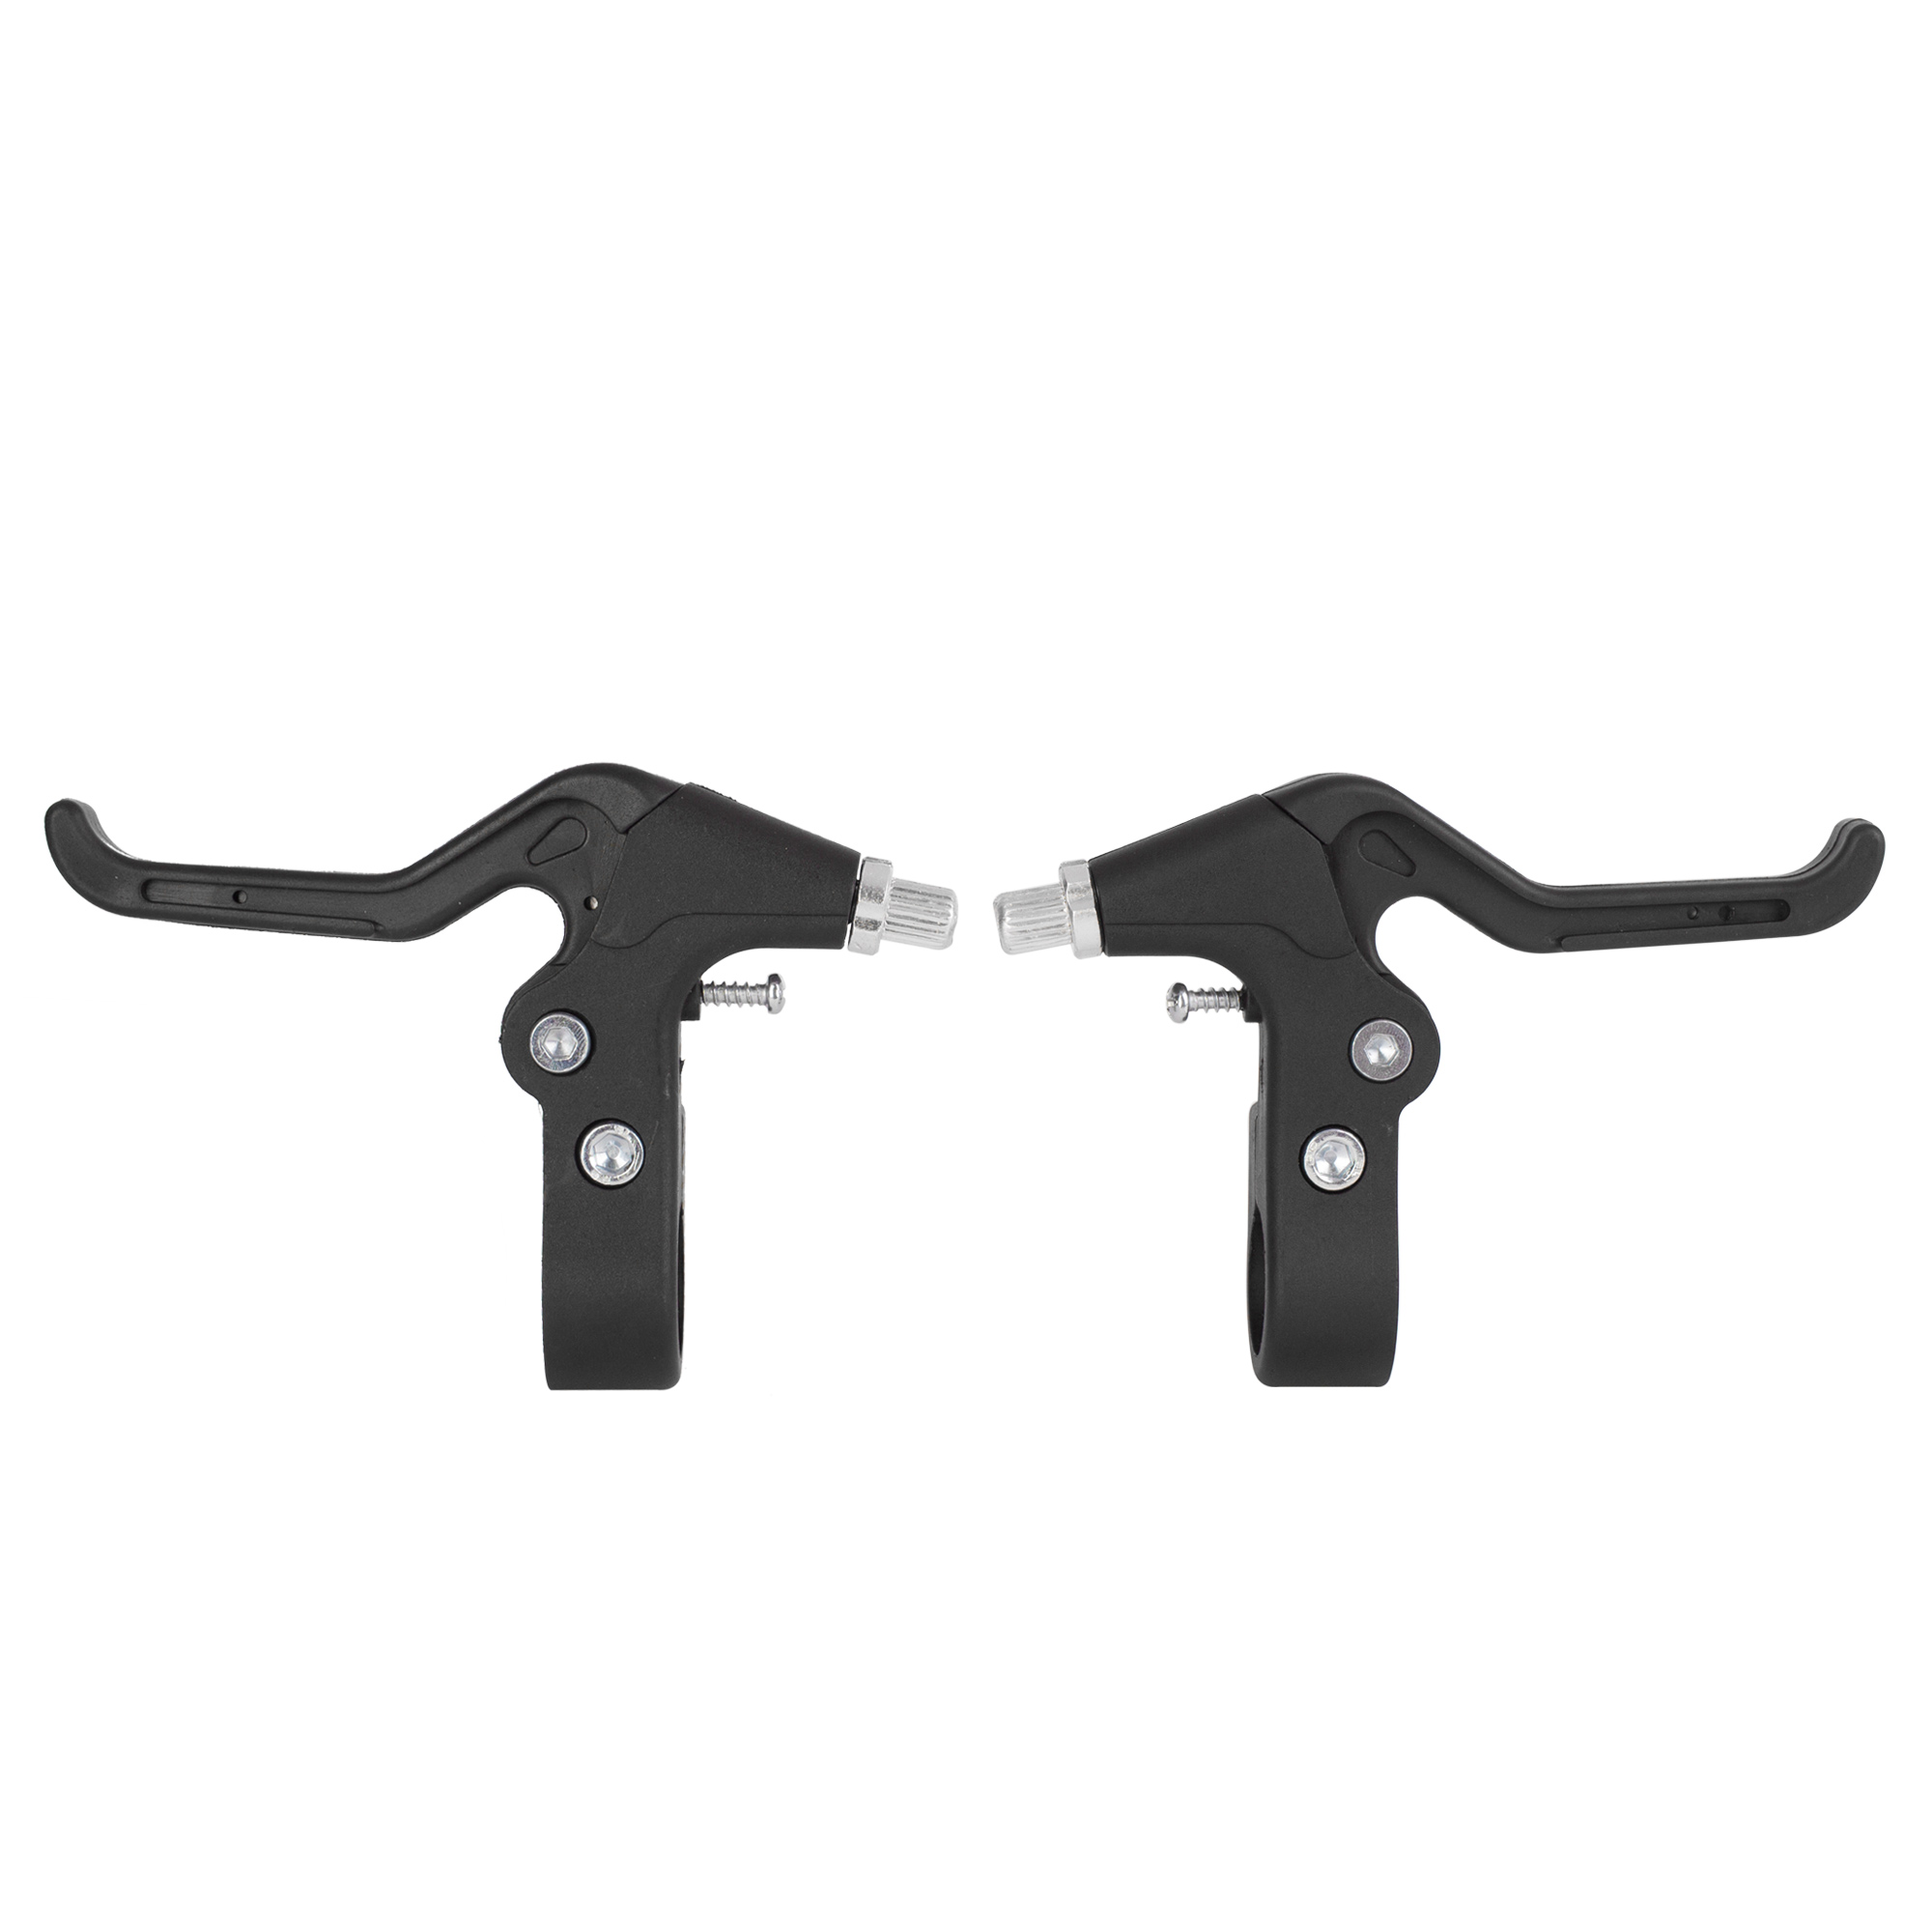 Ciclometa Detalles Frenos caliper para bicicleta 3.5mm negro de